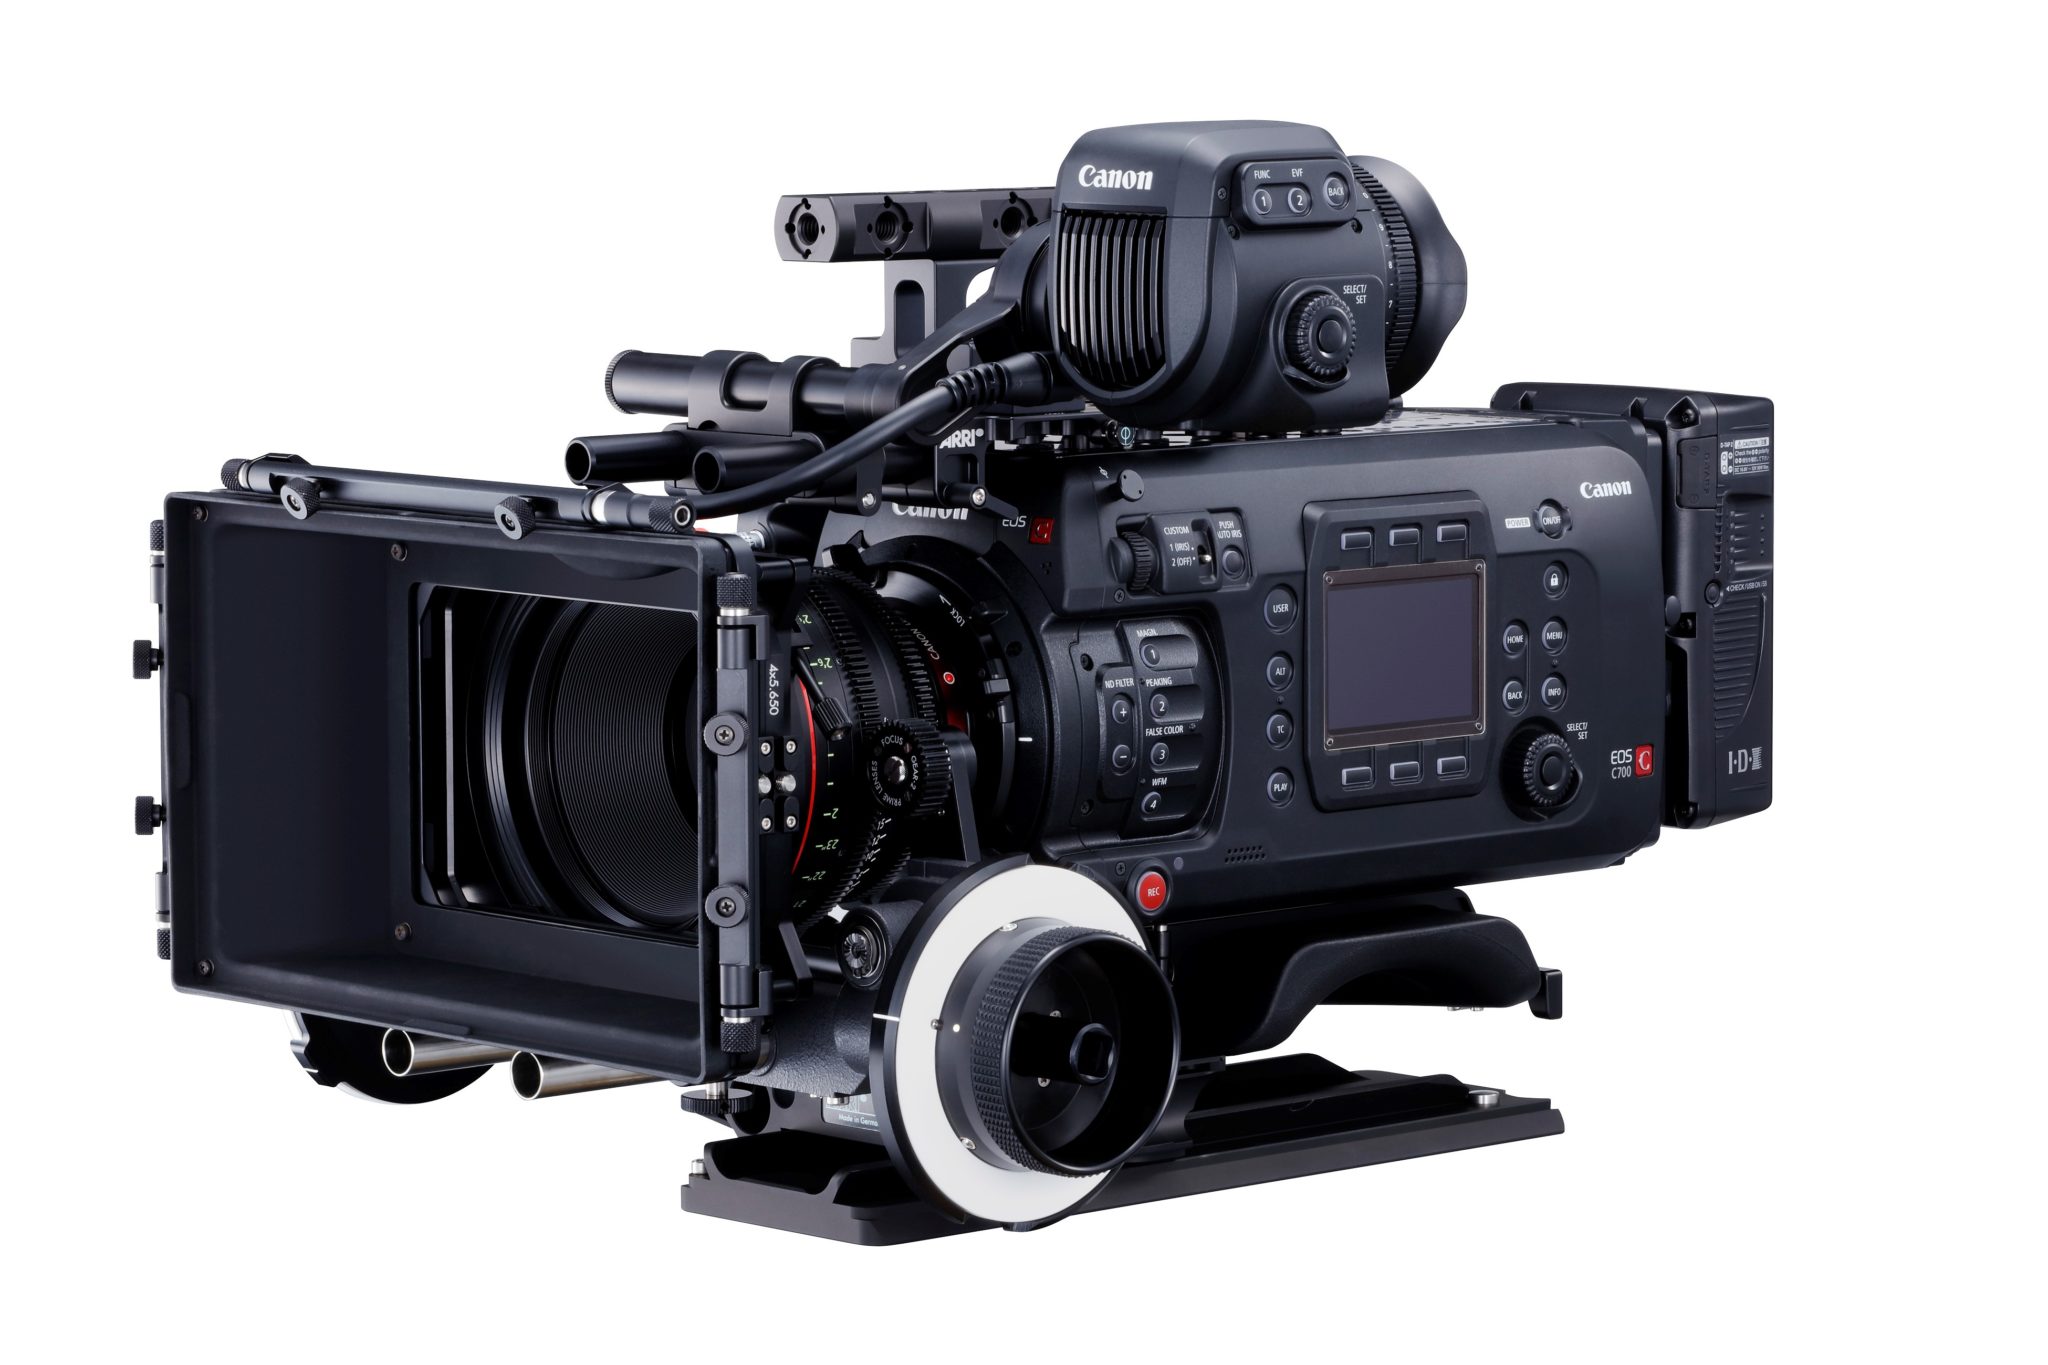  Canon lansează camera full frame EOS C700 FF